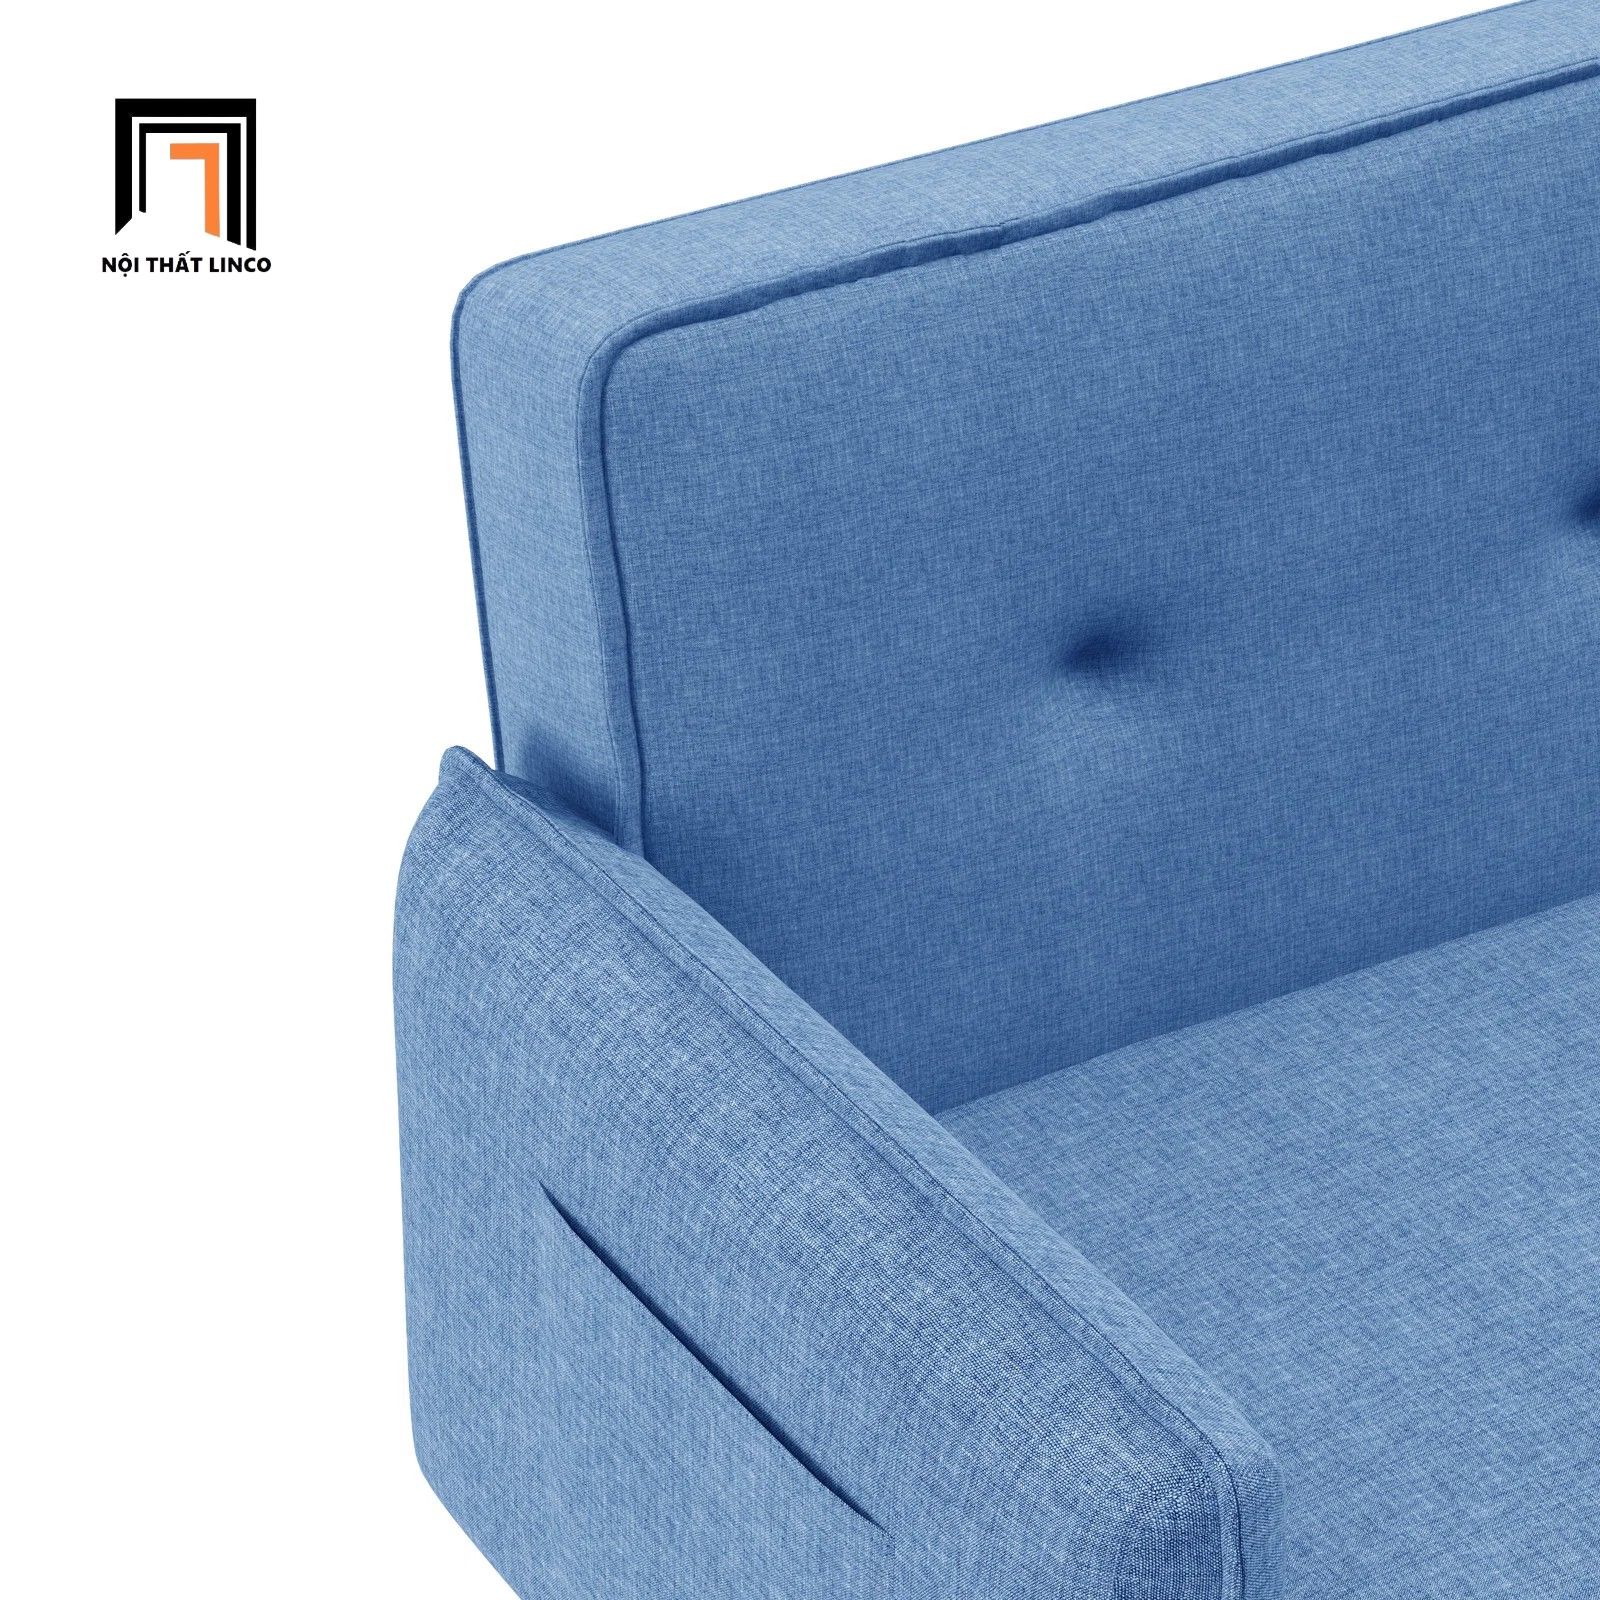  Ghế sofa bed bật giường nằm GB79 Bohlman 2m màu xanh dương 